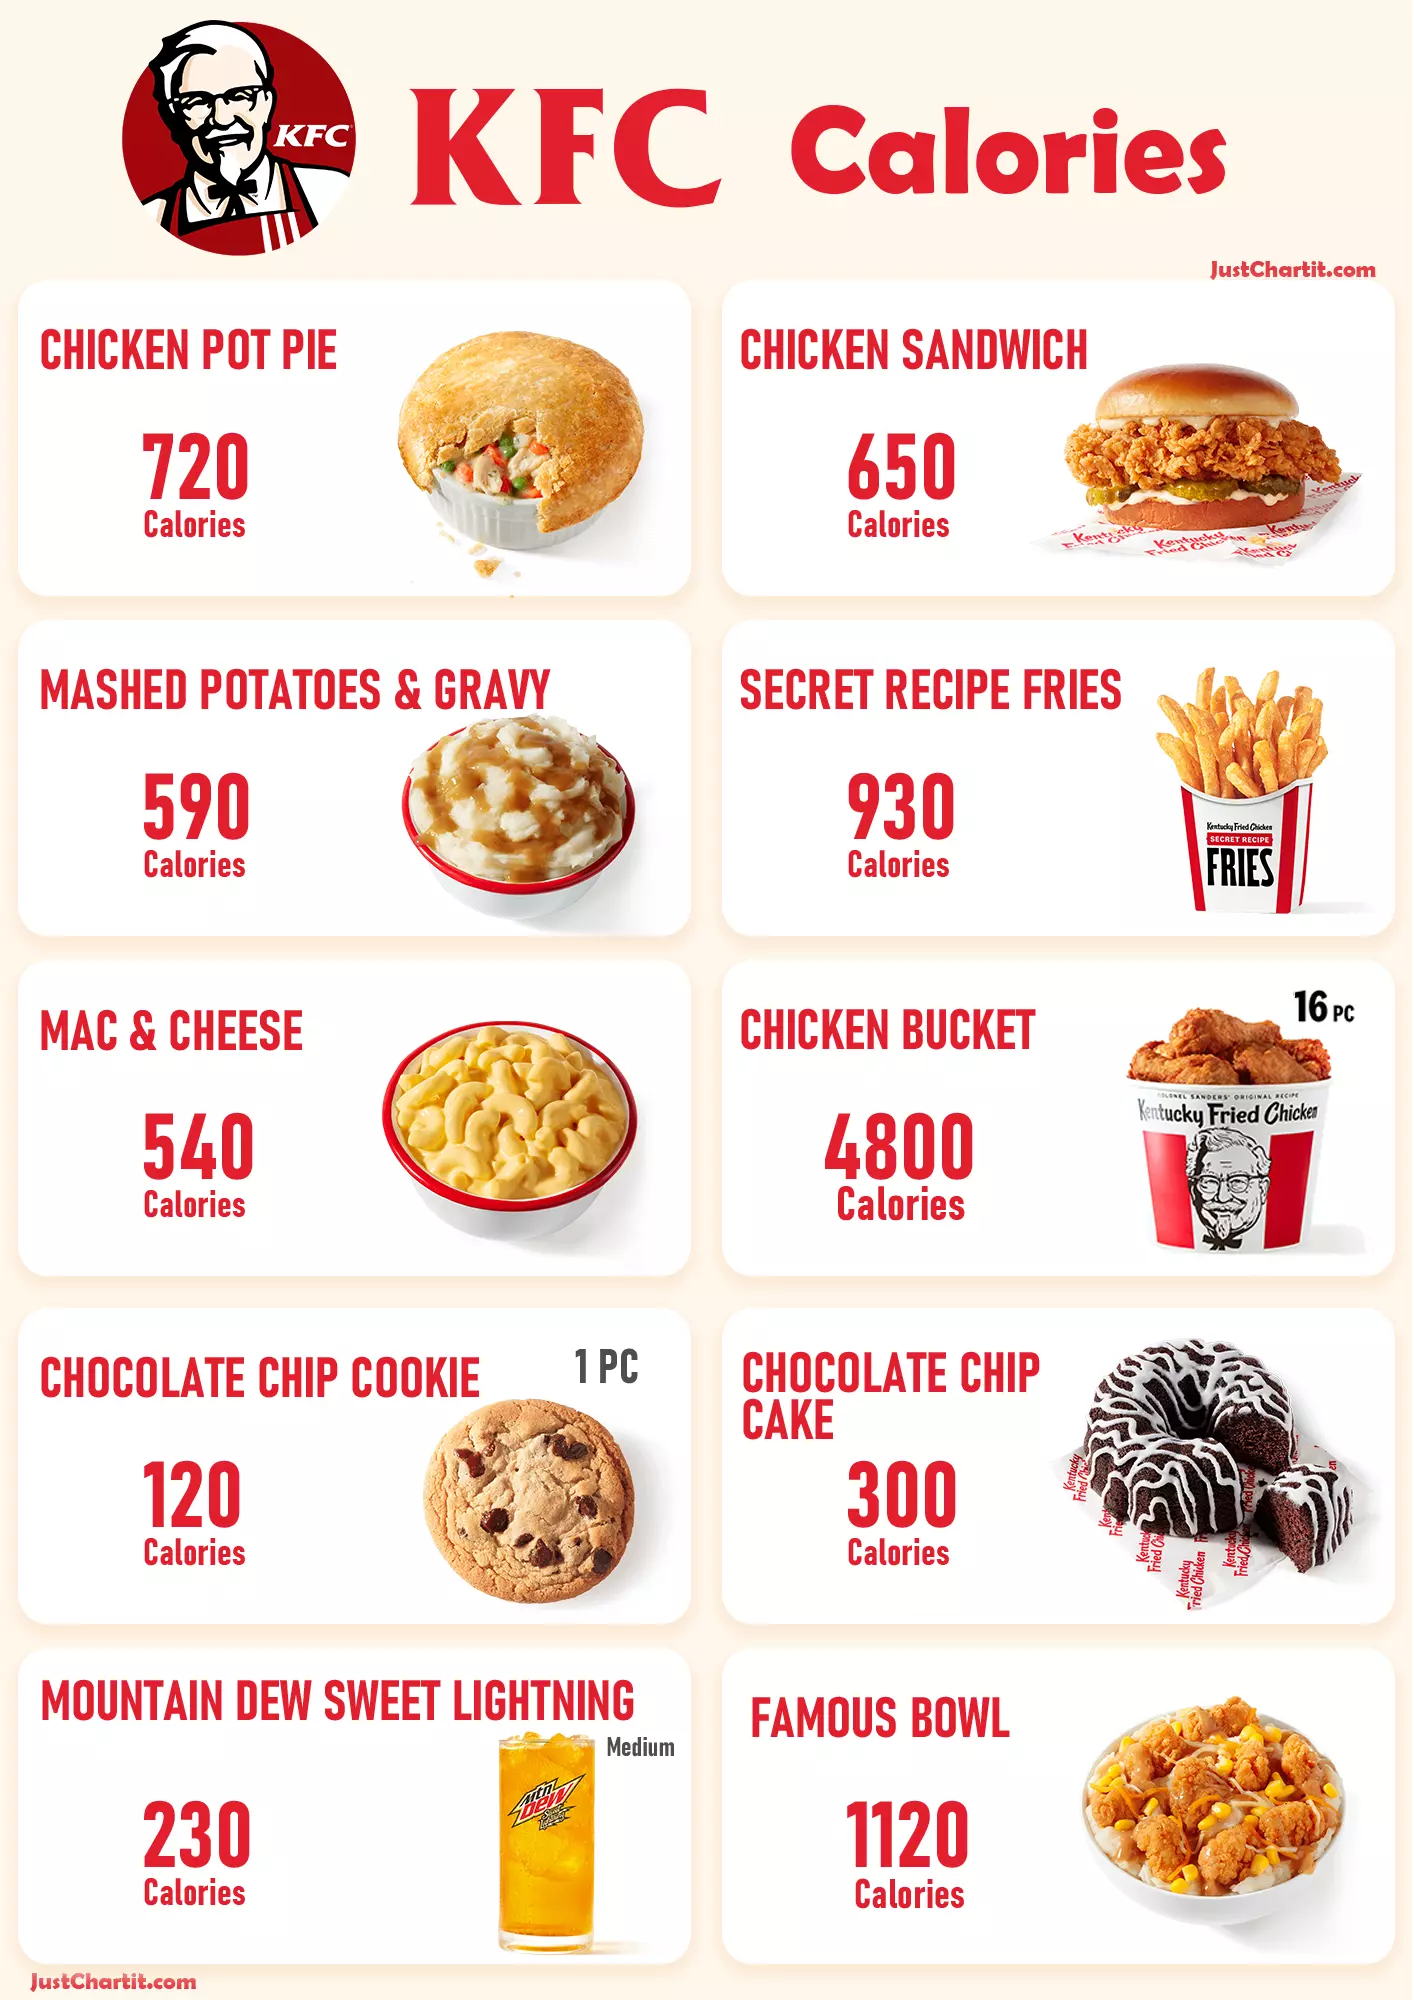 Share more than 153 apple cake calories 100g - kidsdream.edu.vn